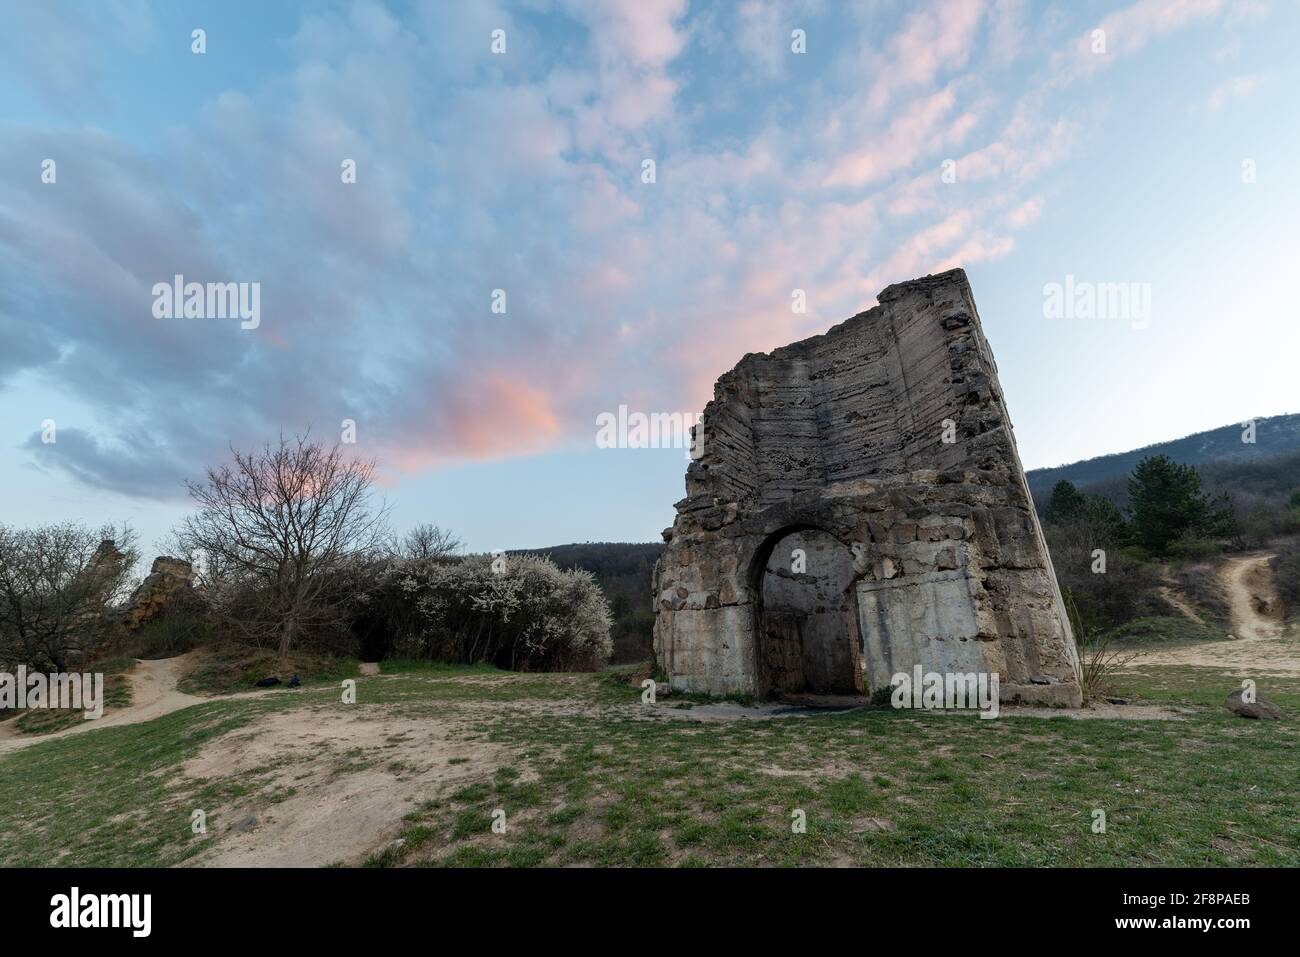 Queste rovine sono il castello di Eger copia. Realizzato per le riprese cinematografiche storiche ungheresi. Il film è il siegle di Eger castello. Foto Stock